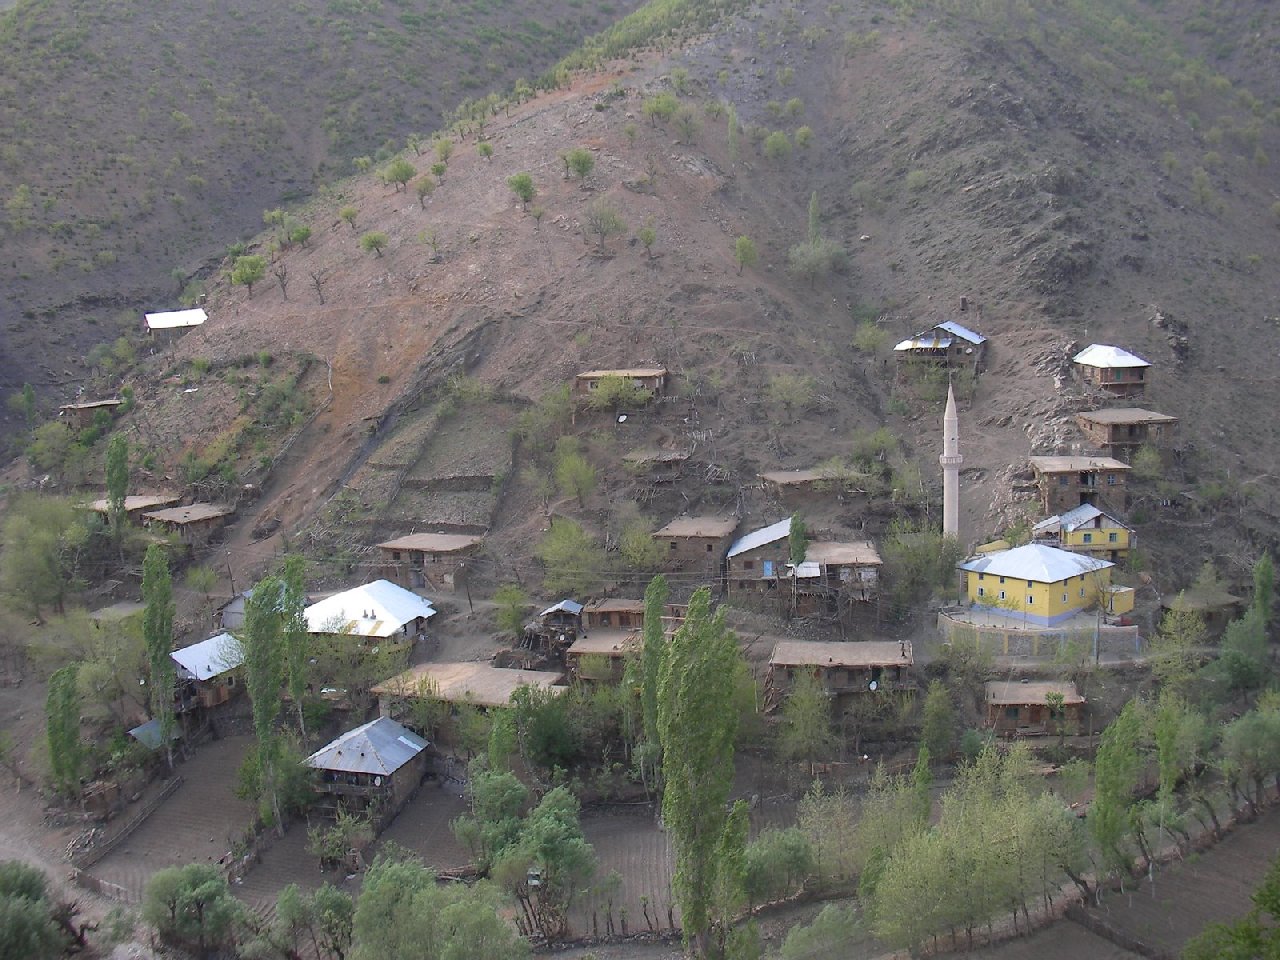 Bakanlık alarm verdi: Tüm köy karantinaya alındı giriş çıkışlar yasaklandı